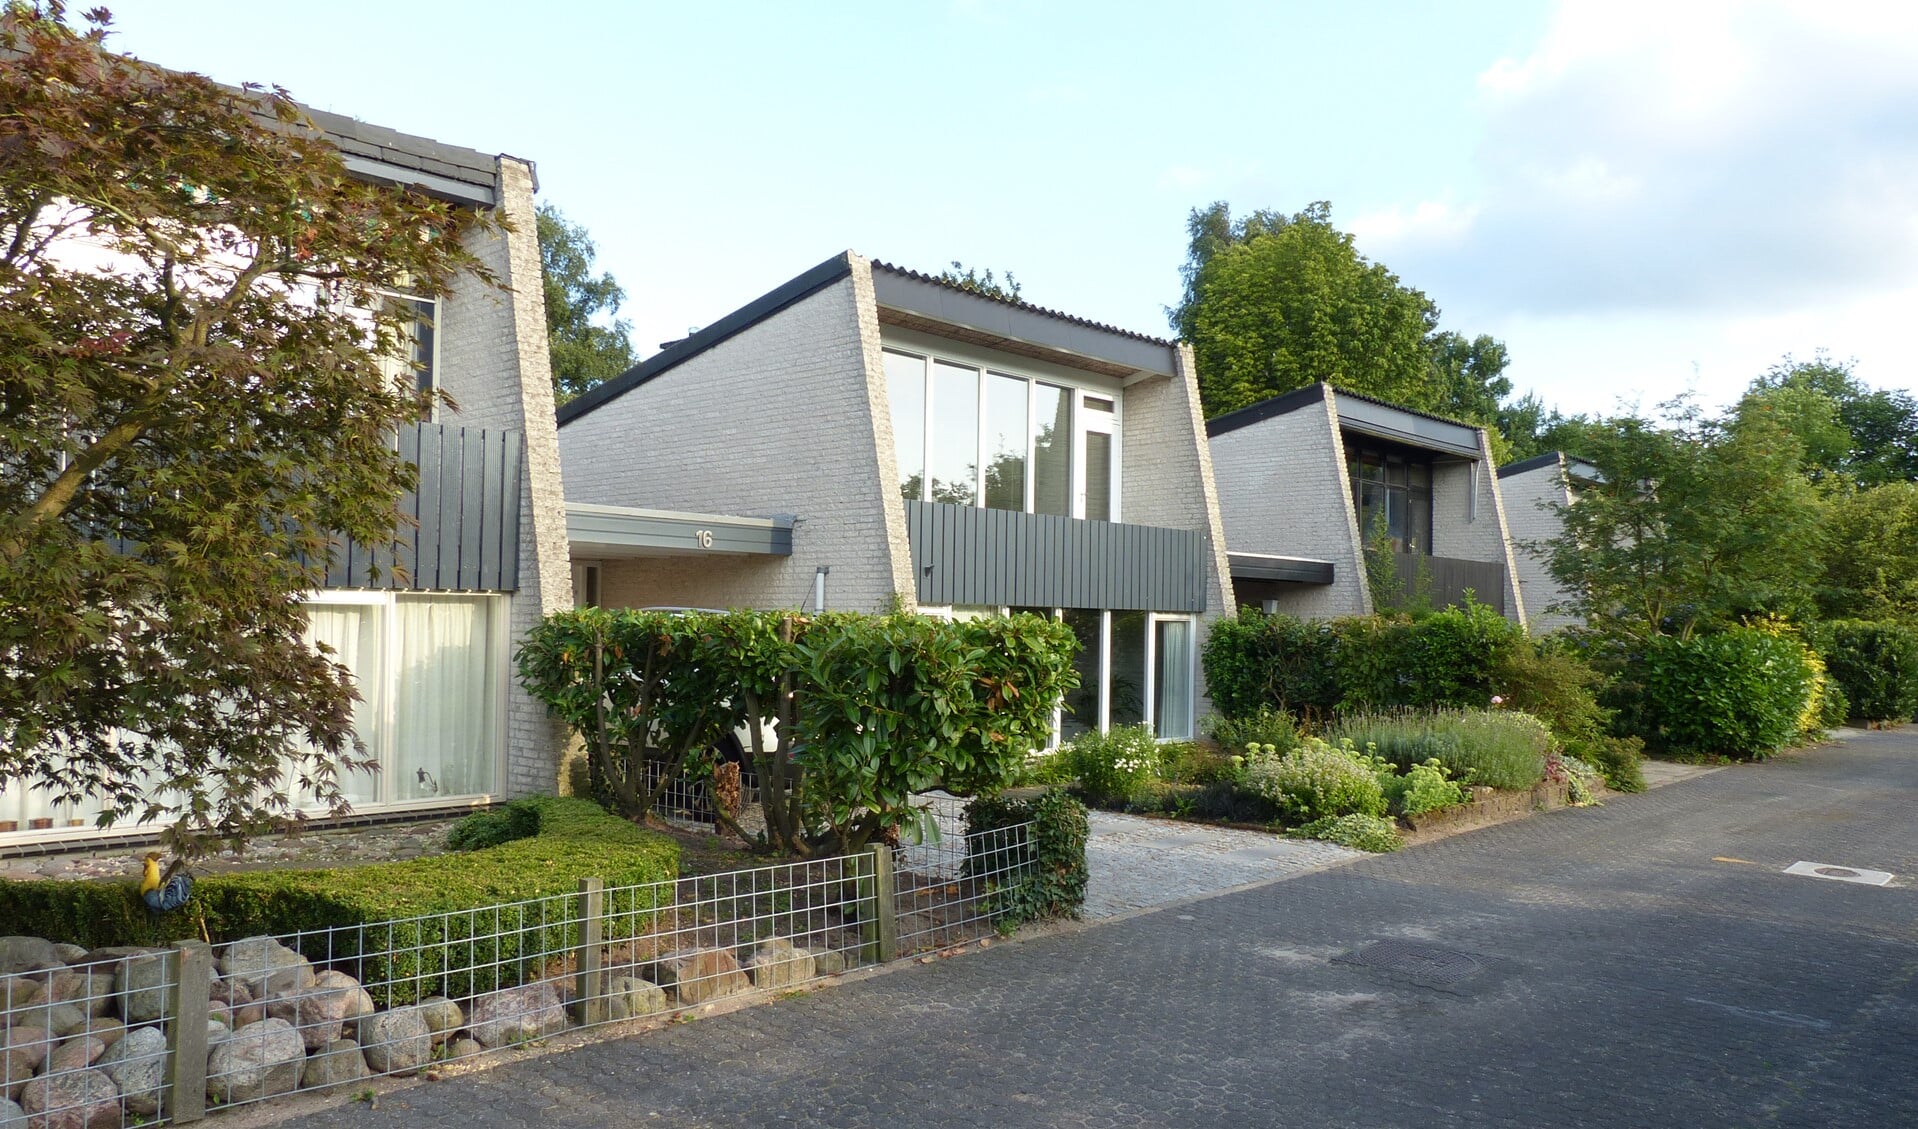 Voorbeeld van een woning in de wijken Stand en Lande en Bovenweg.